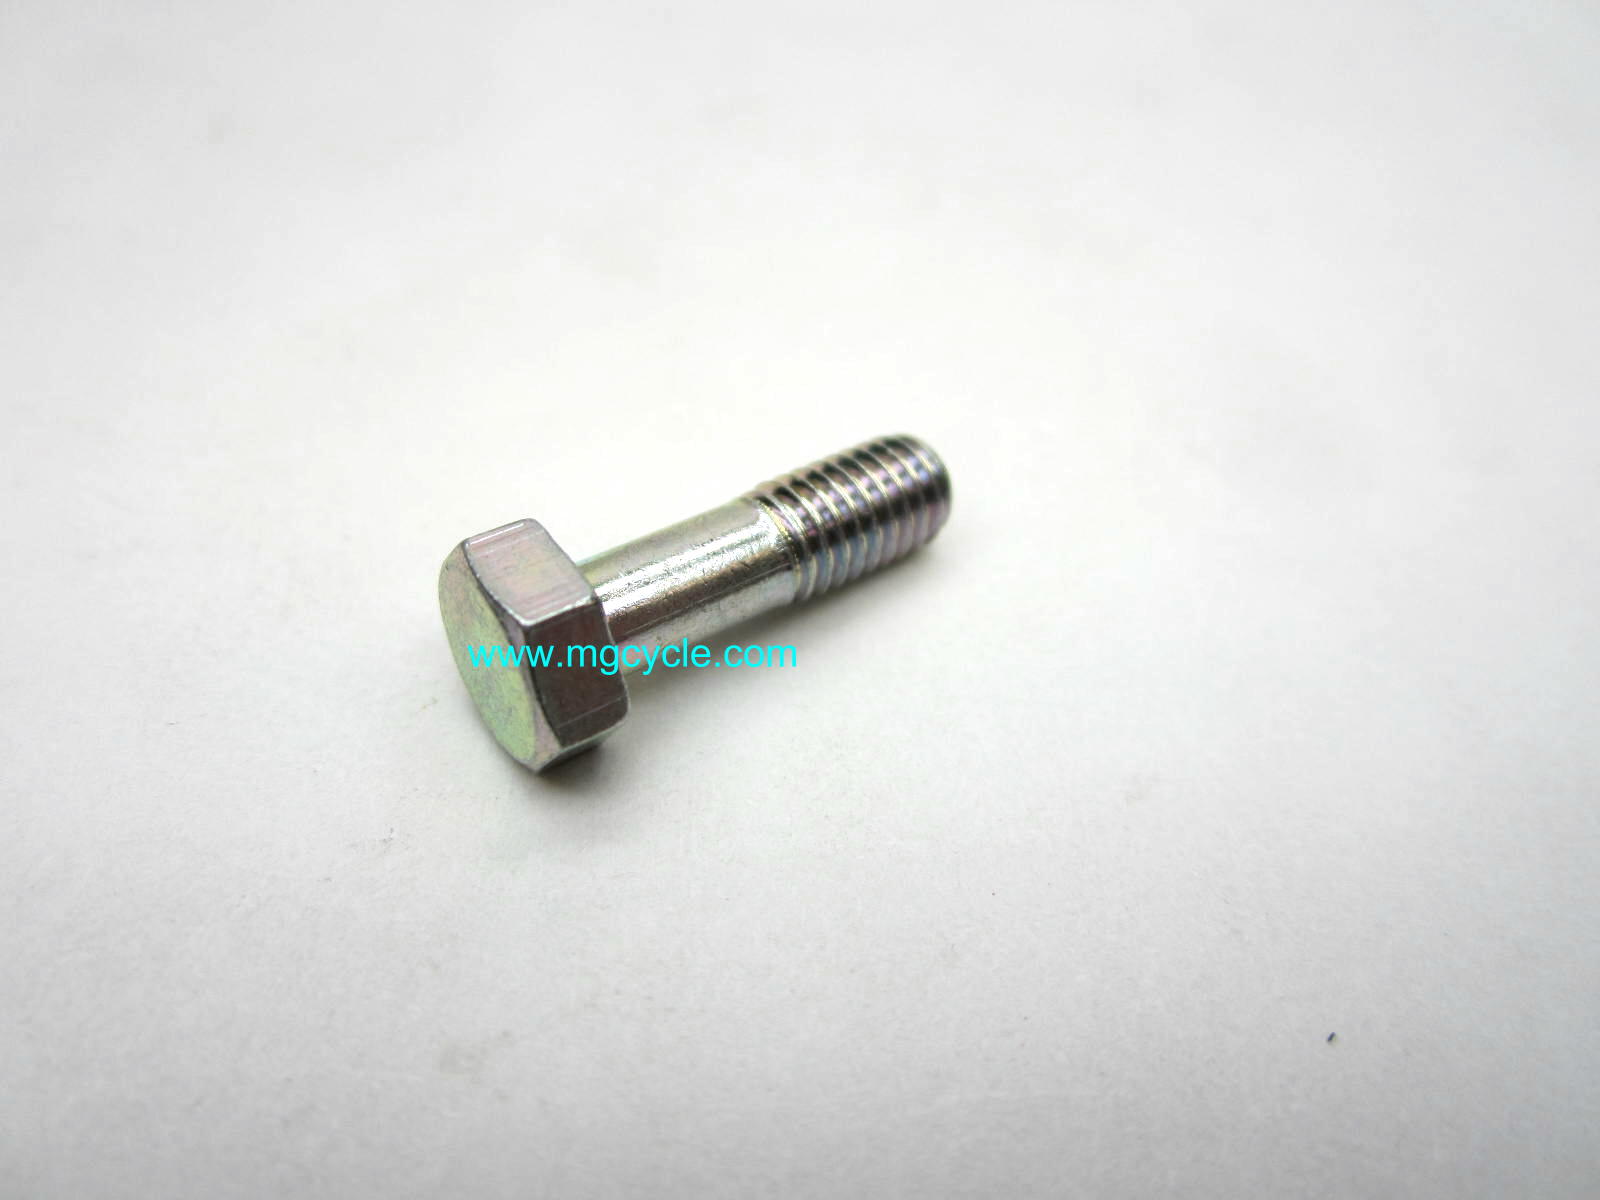 Dellorto 8542 screw for PHF and PHM carb top